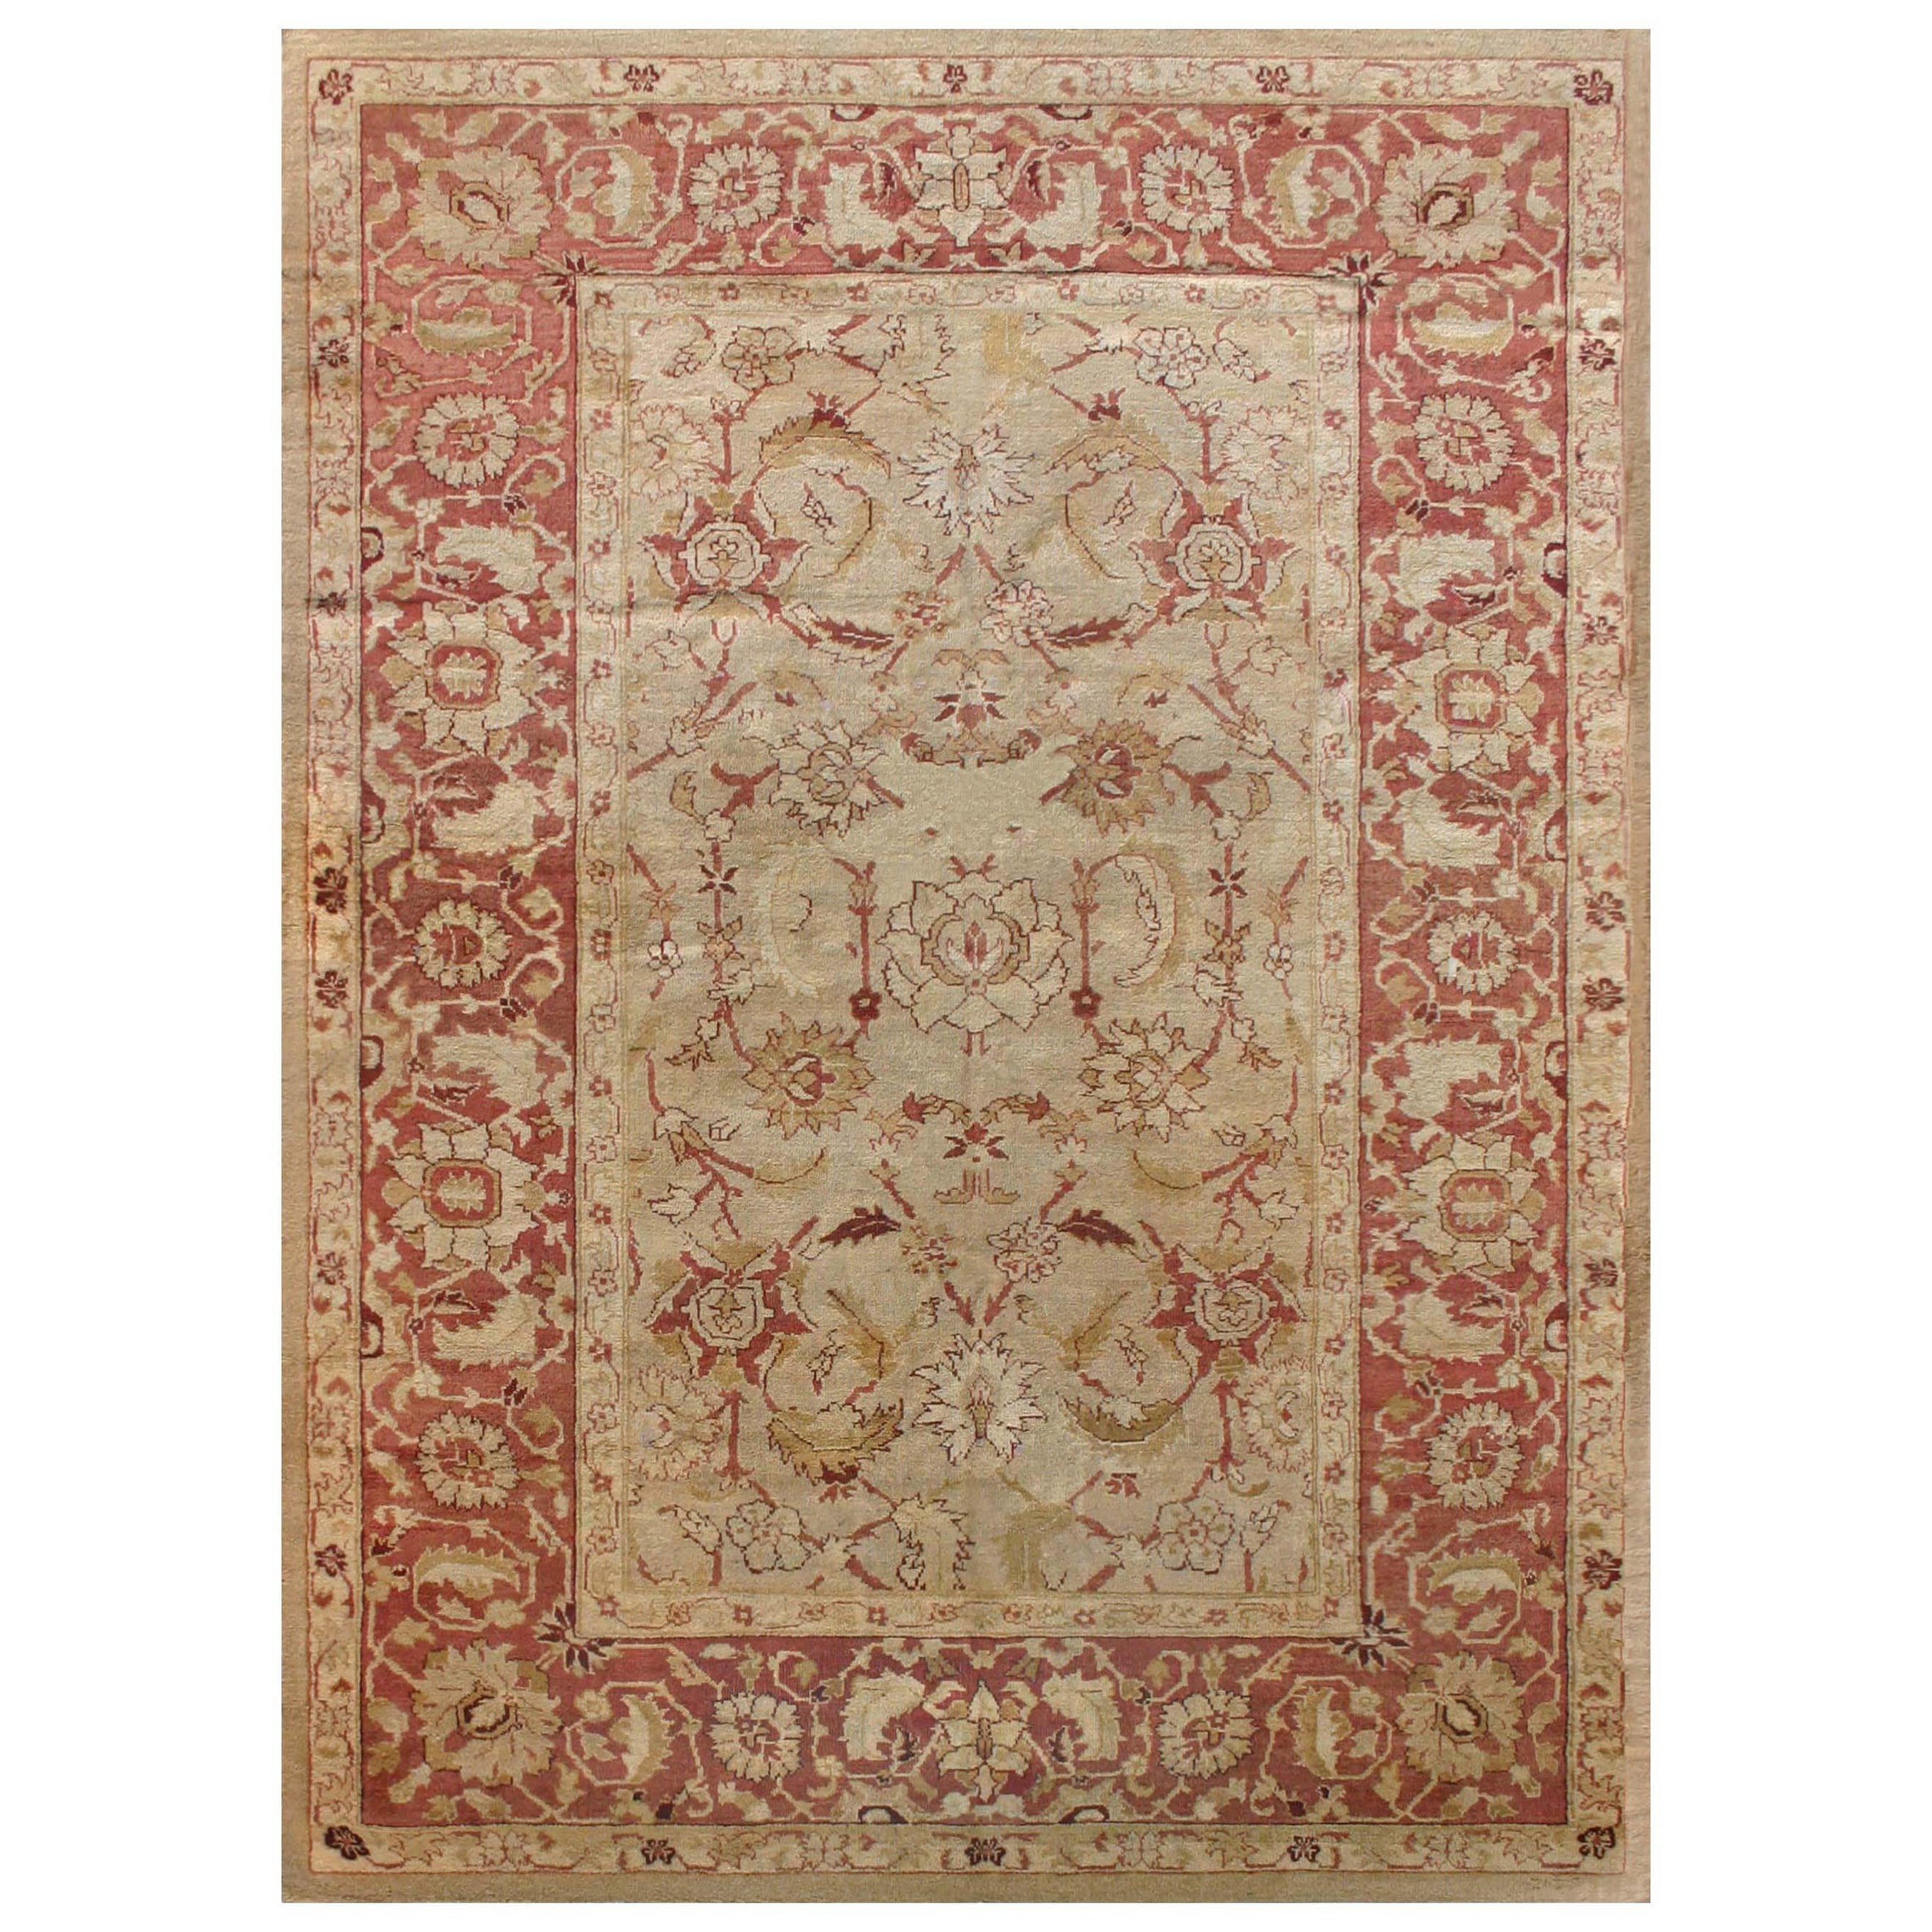 Vintage Botanic Indian Amritsar Carpet